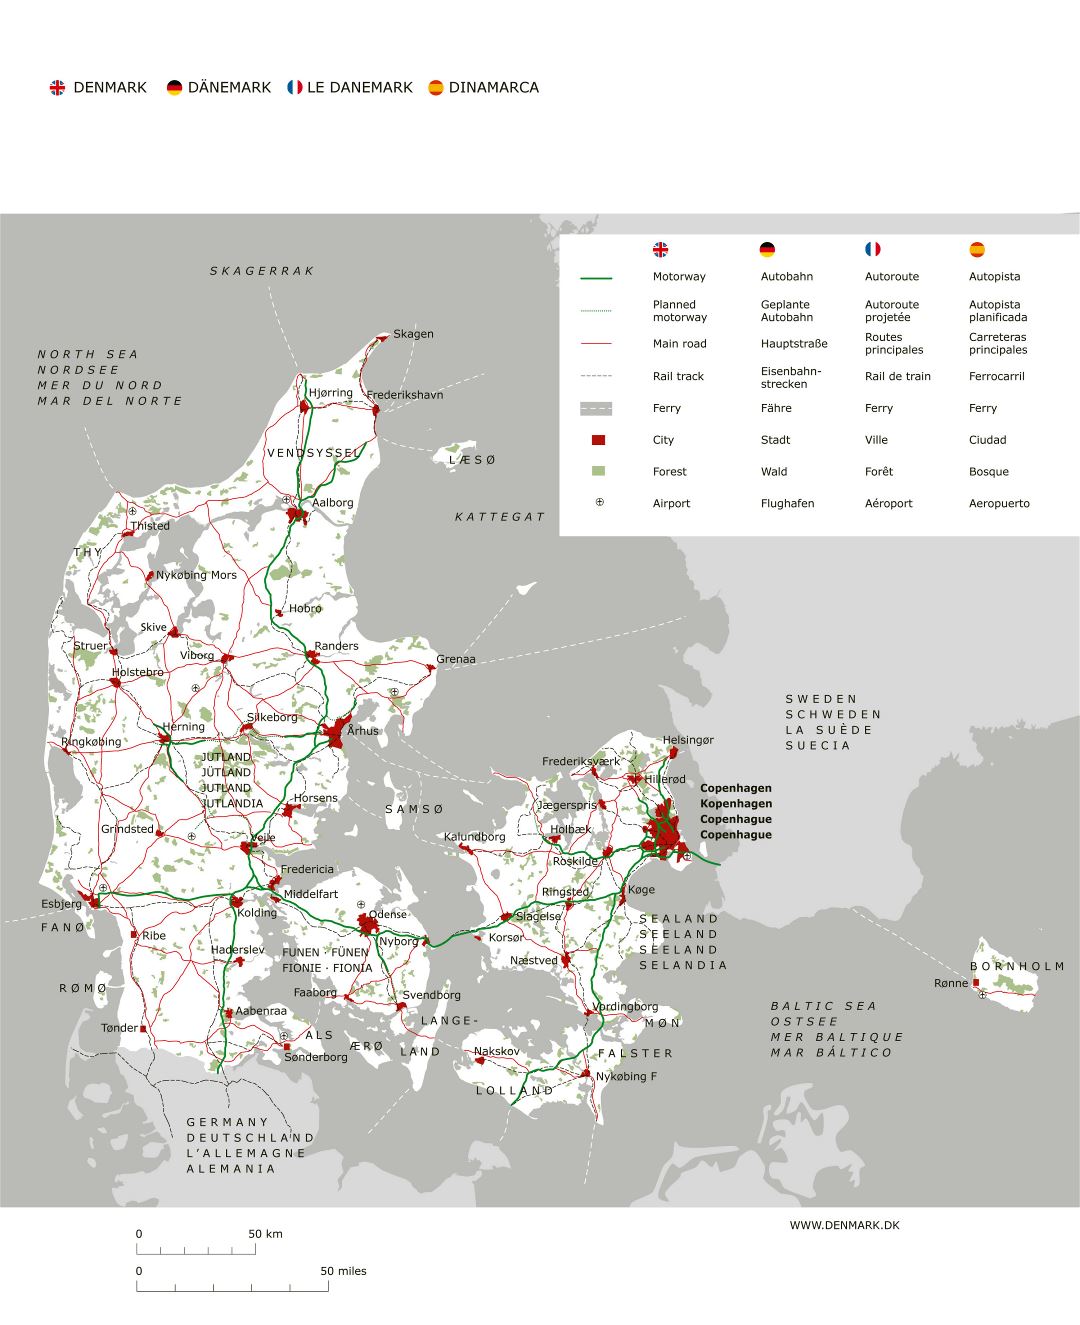 Gran hoja de ruta detallada de Dinamarca con las principales ciudades y aeropuertos